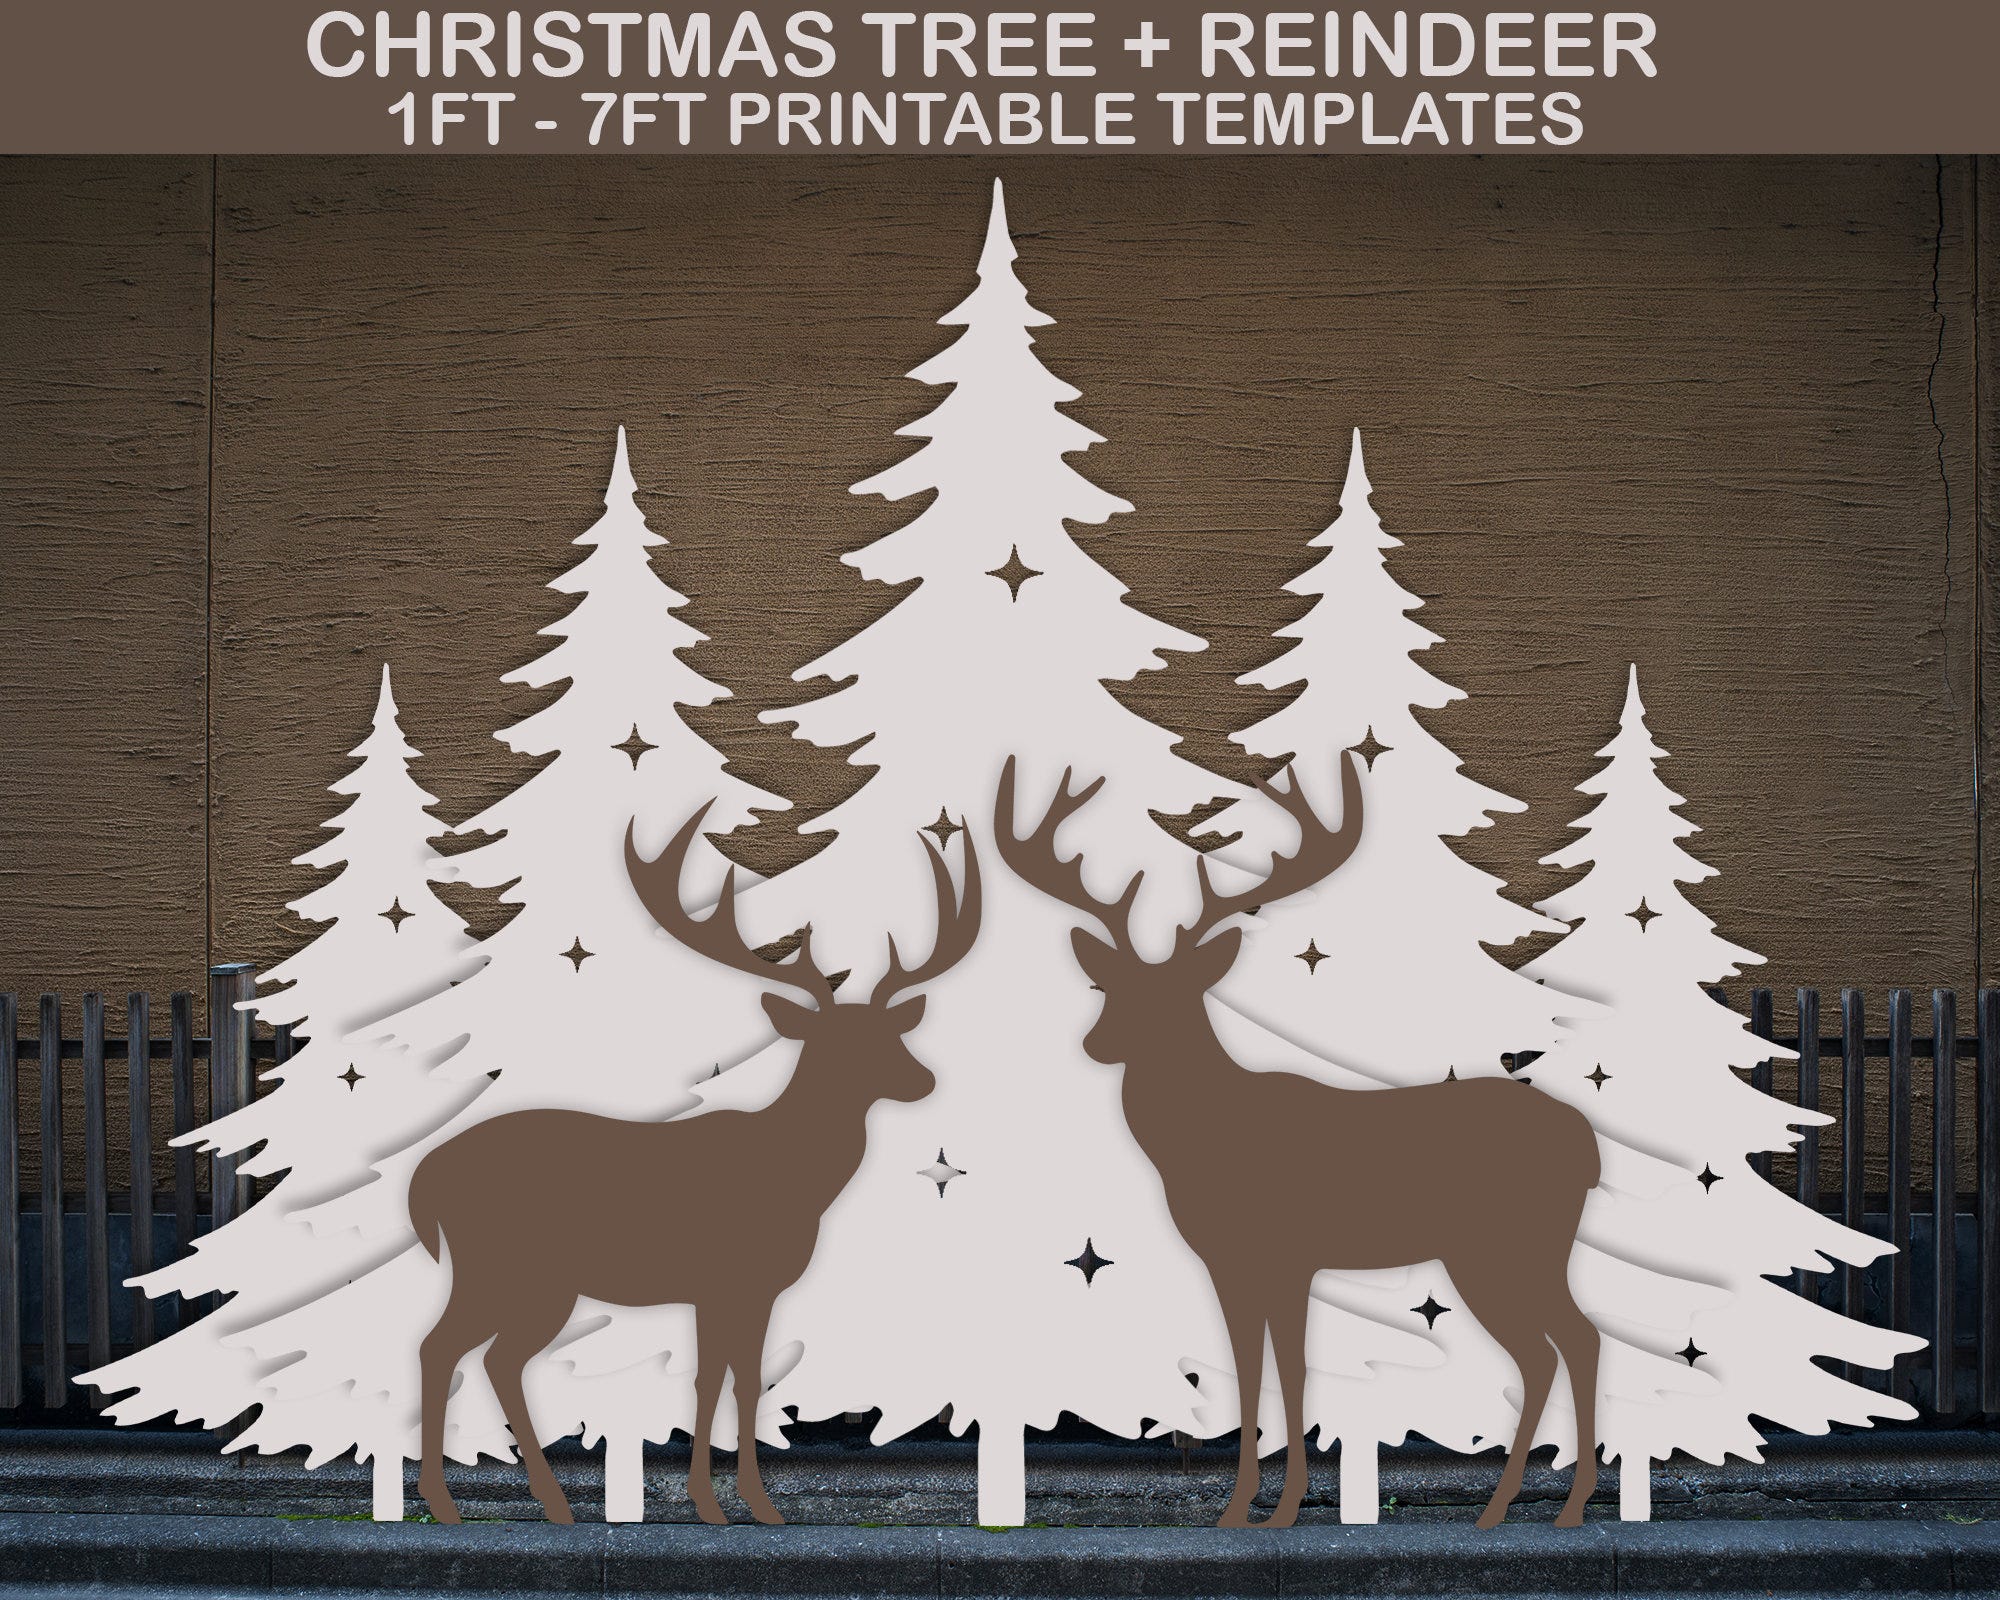 Christmas Tree Template, Printable Stencil Pdf, Christmas Silhouette Decor Templates, Christmas Scene Template, Backyard Decor, Garden Decor